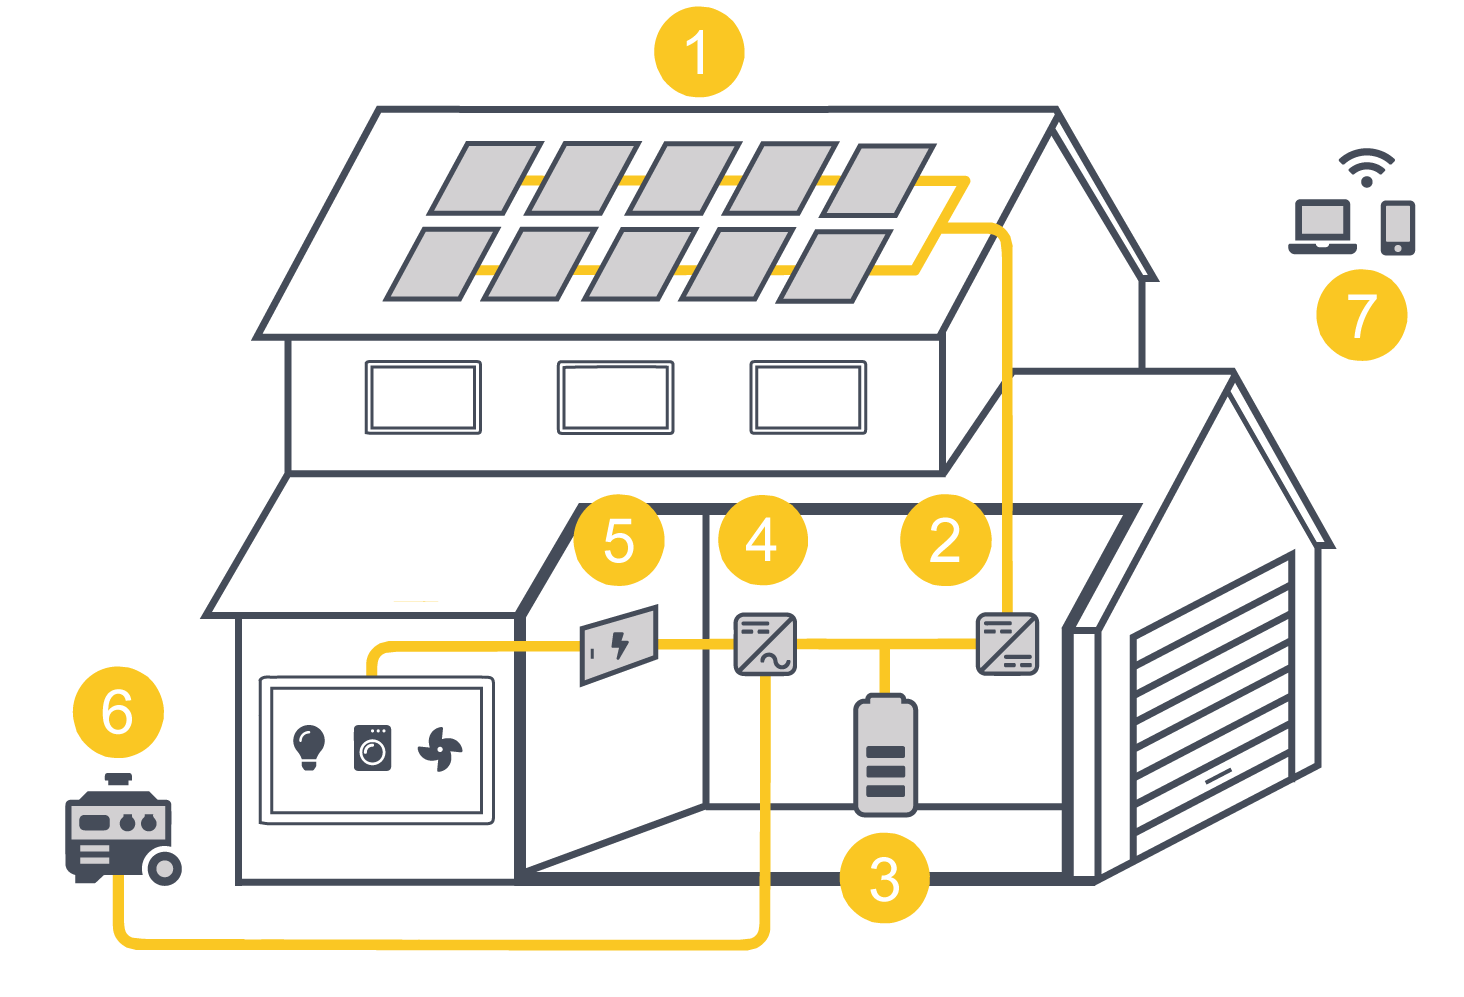 Instalación fotovoltaica para autoconsumo aislada de la red